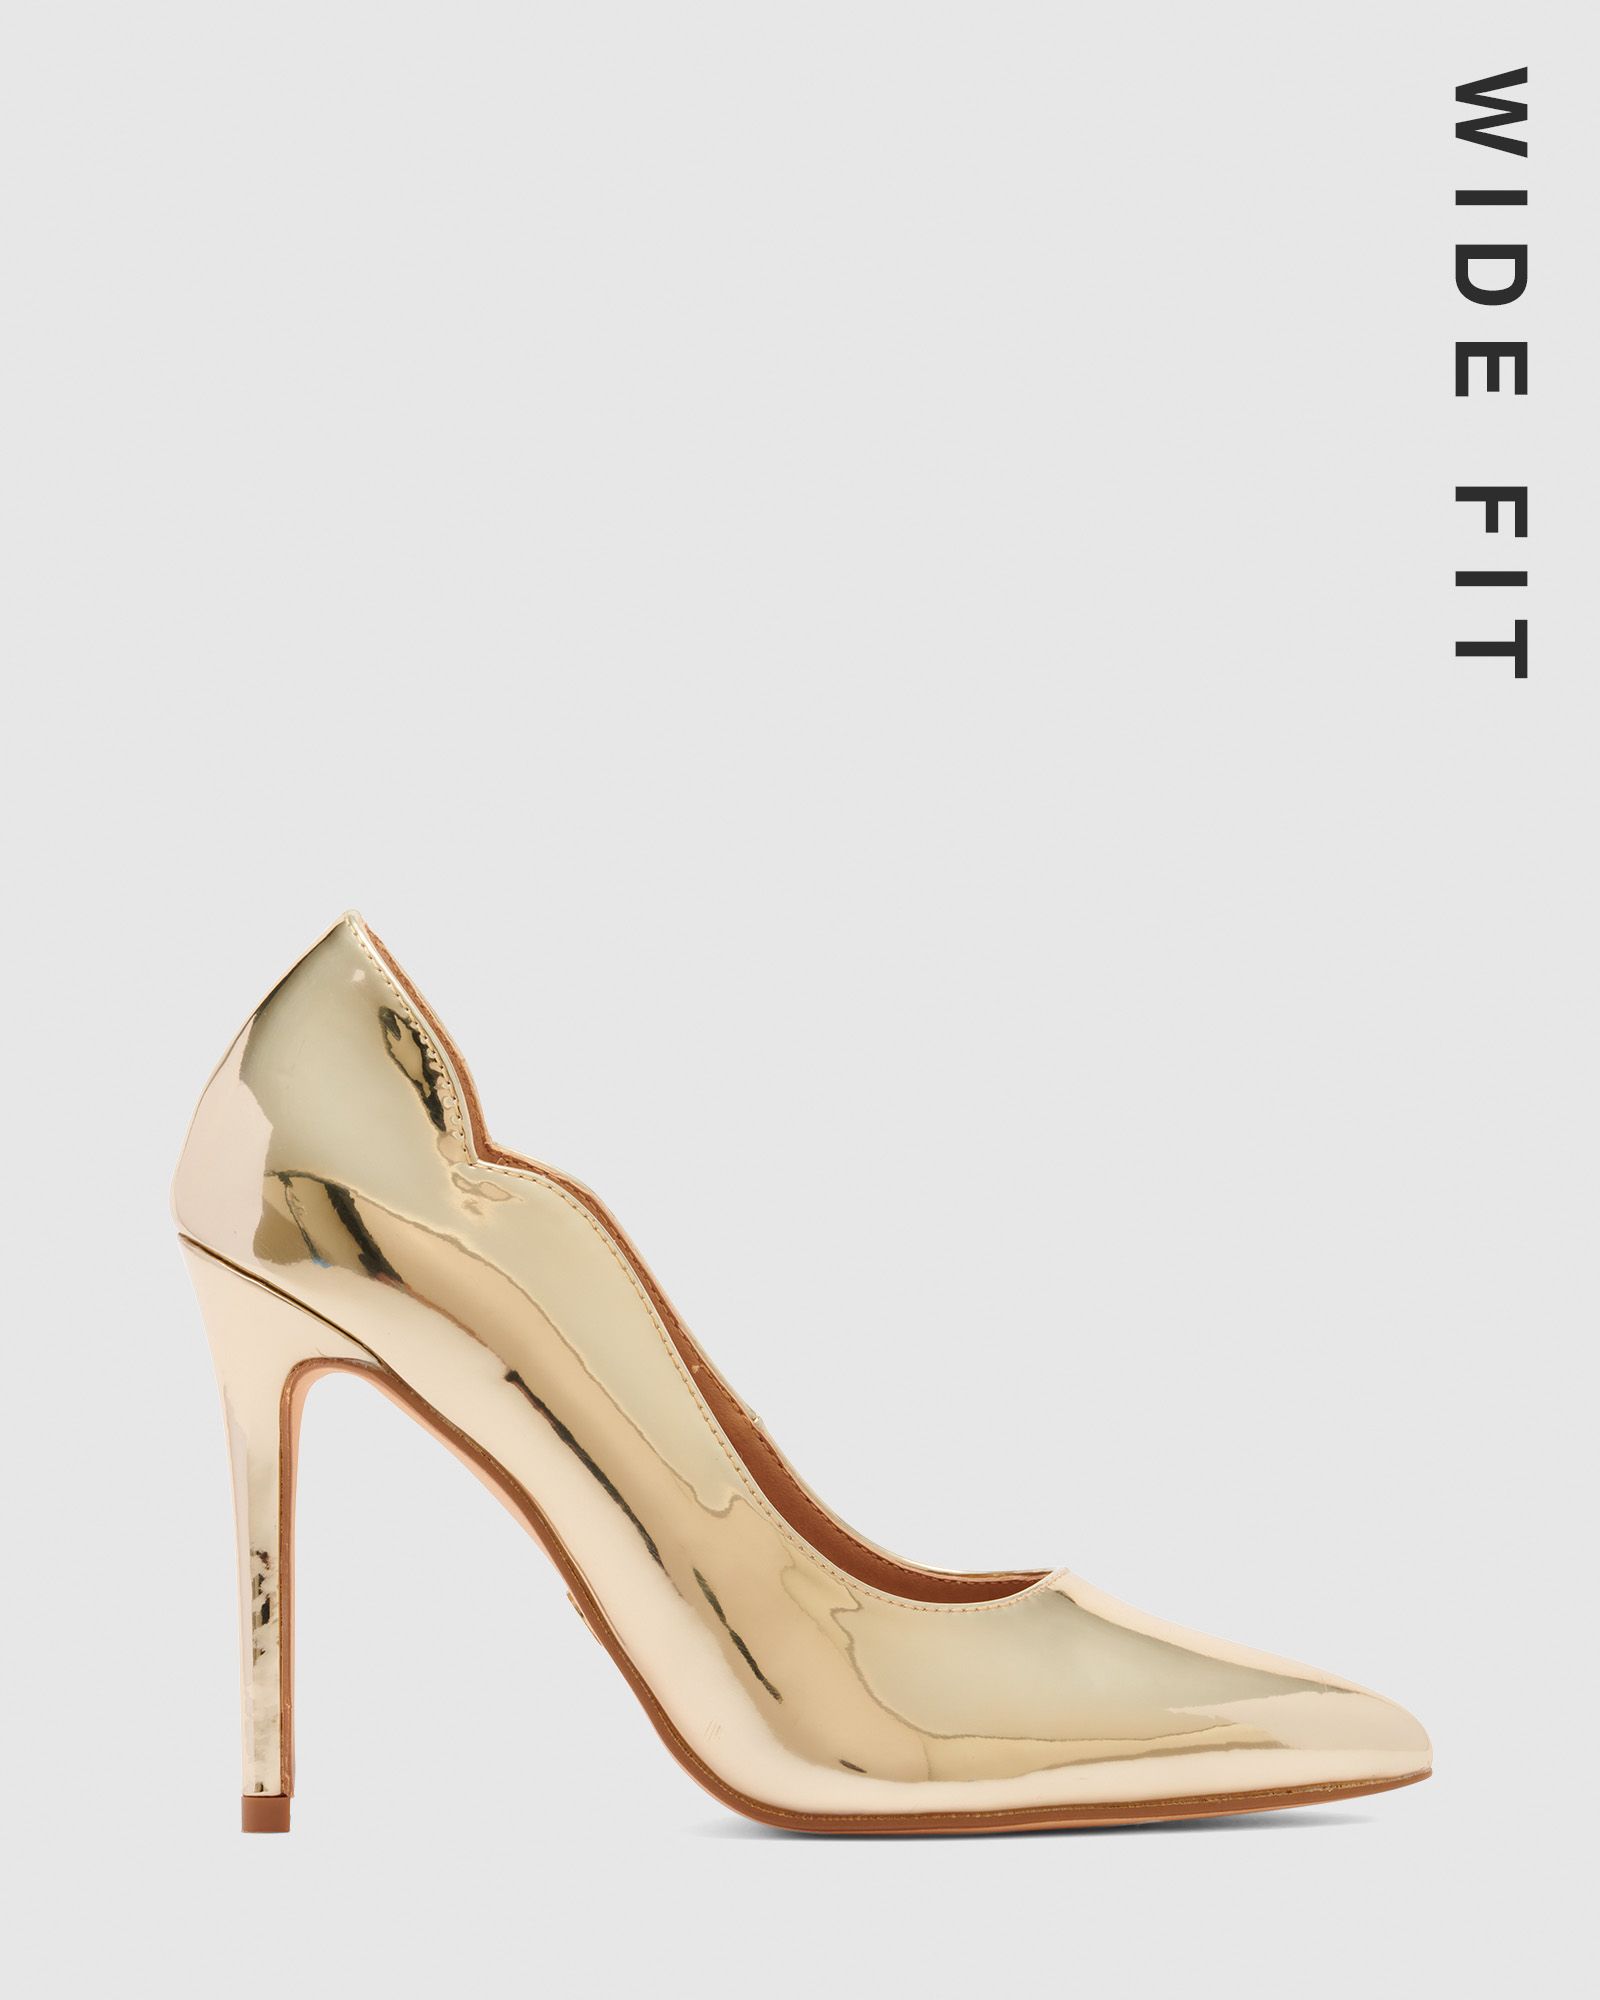 Court shoe High-heeled shoe Gold Peep-toe shoe, gold, heel, woman, shoe png  | PNGWing